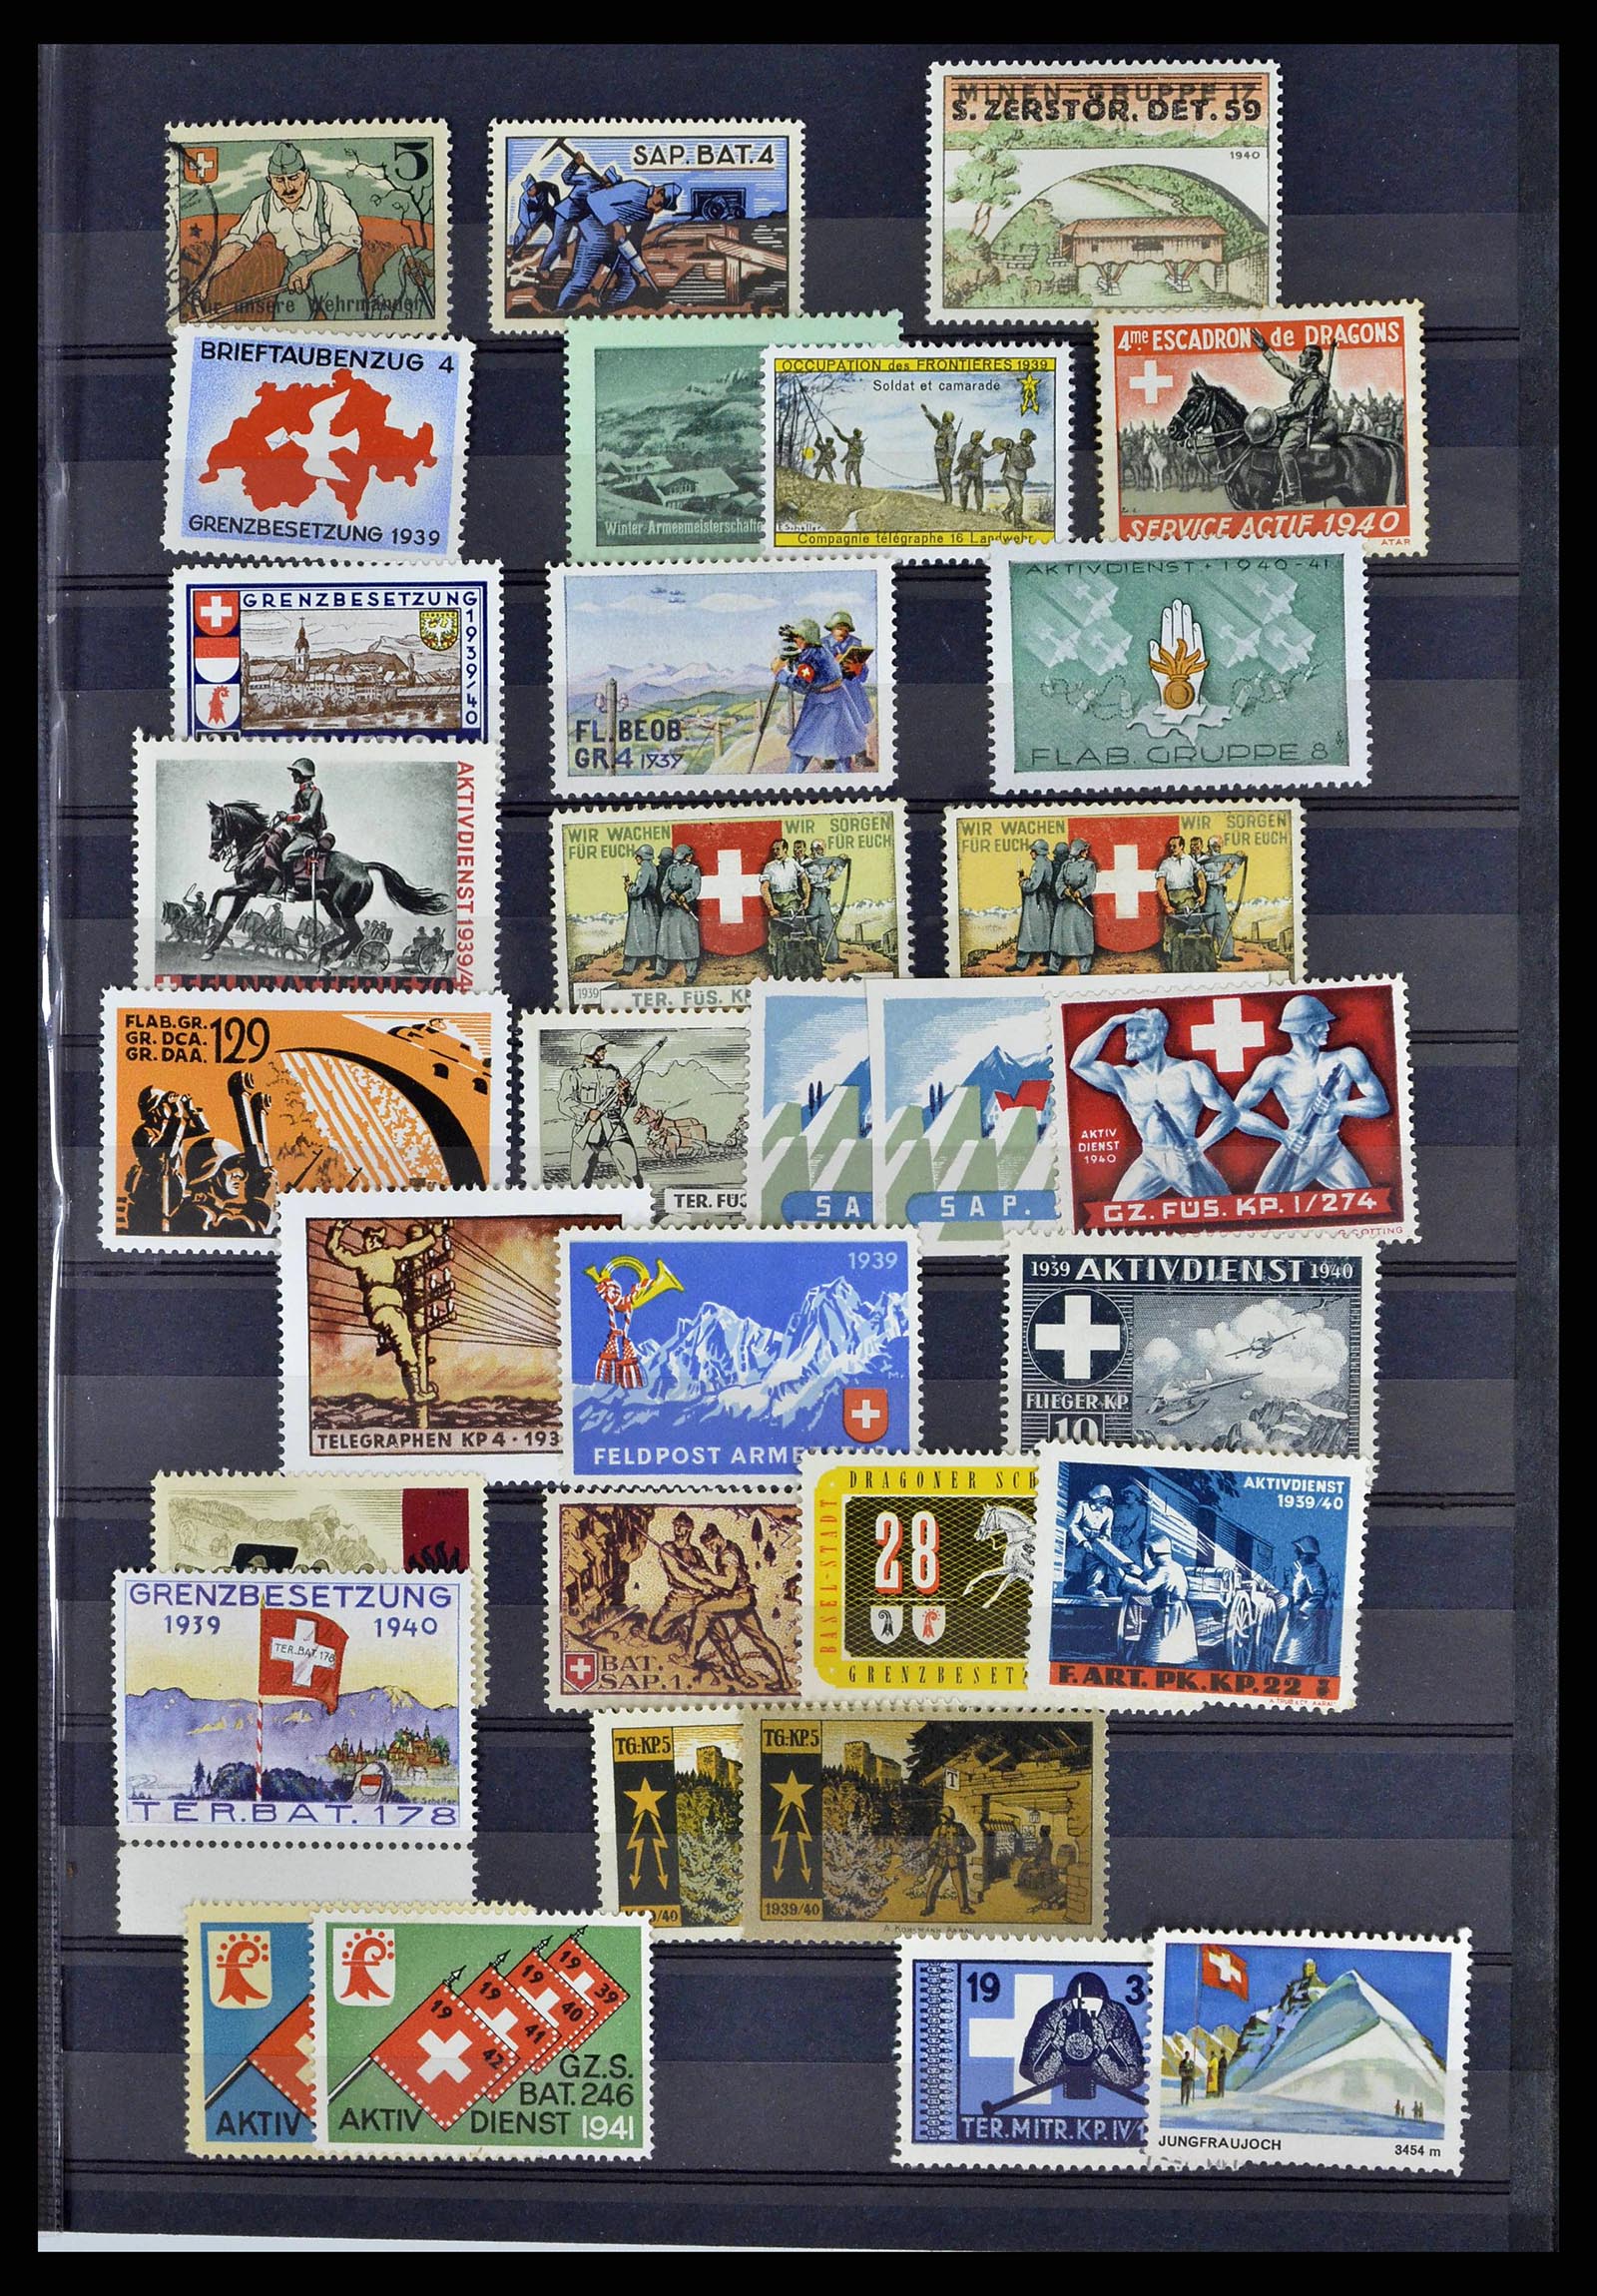 38768 0018 - Stamp collection 38768 Switzerland soldierstamps 1914-1945.